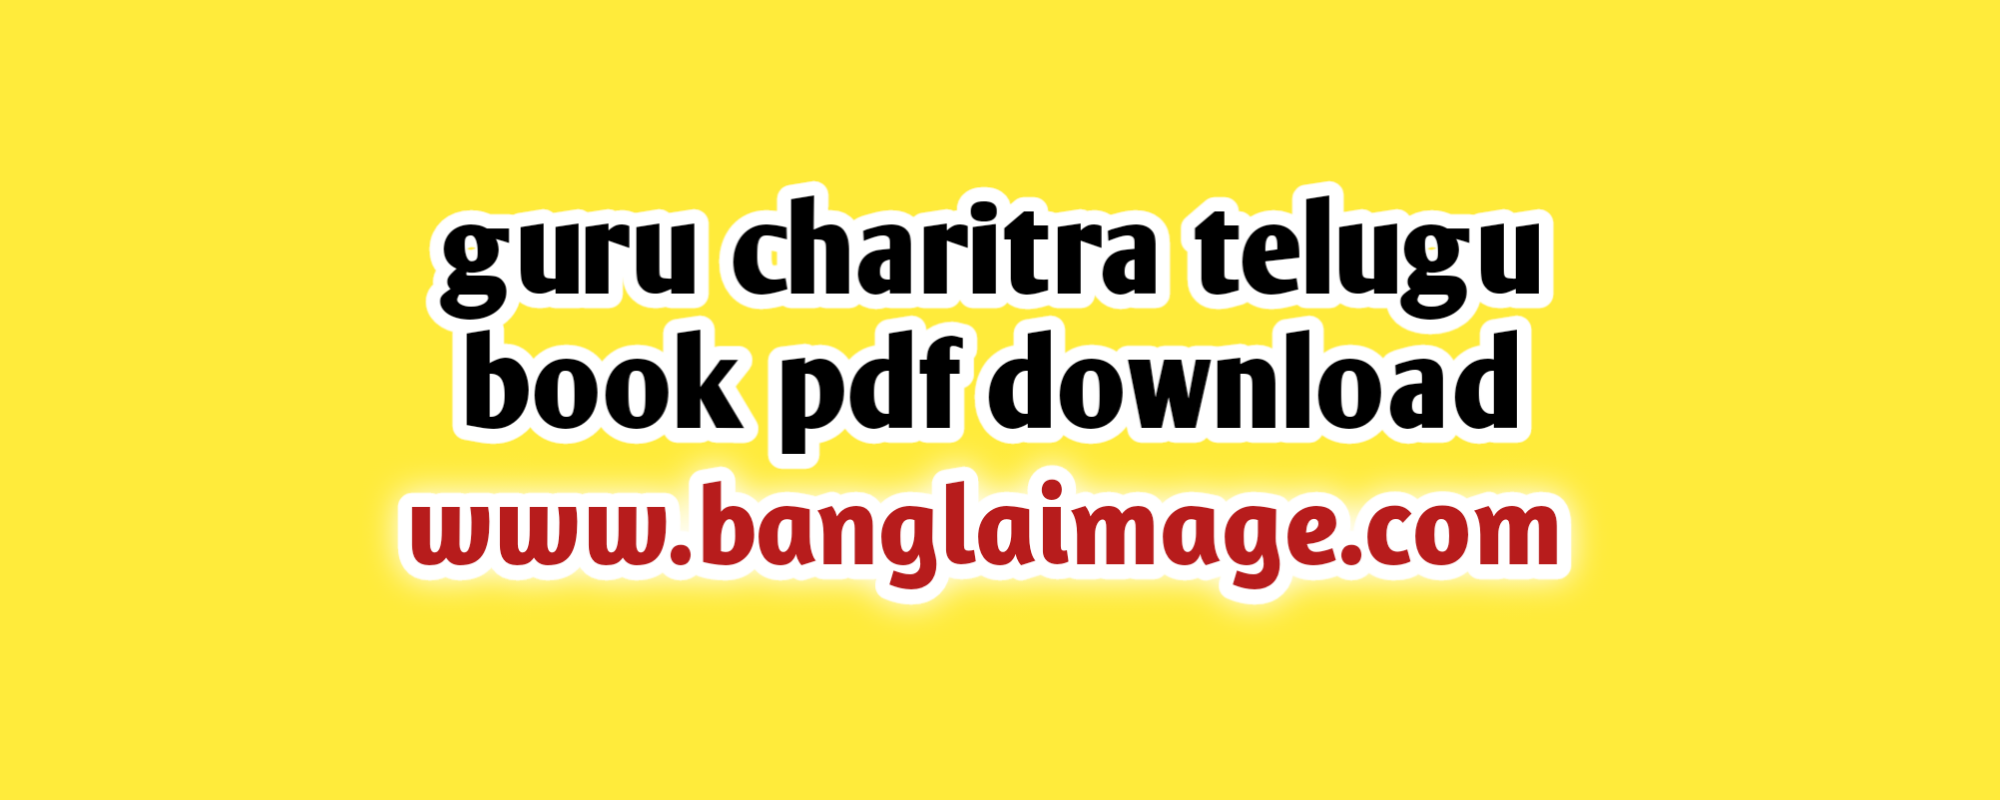 guru charitra telugu book pdf download, guru charitra telugu book pdf download drive file, guru charitra telugu book pdf download now, the guru charitra telugu book pdf download drive file